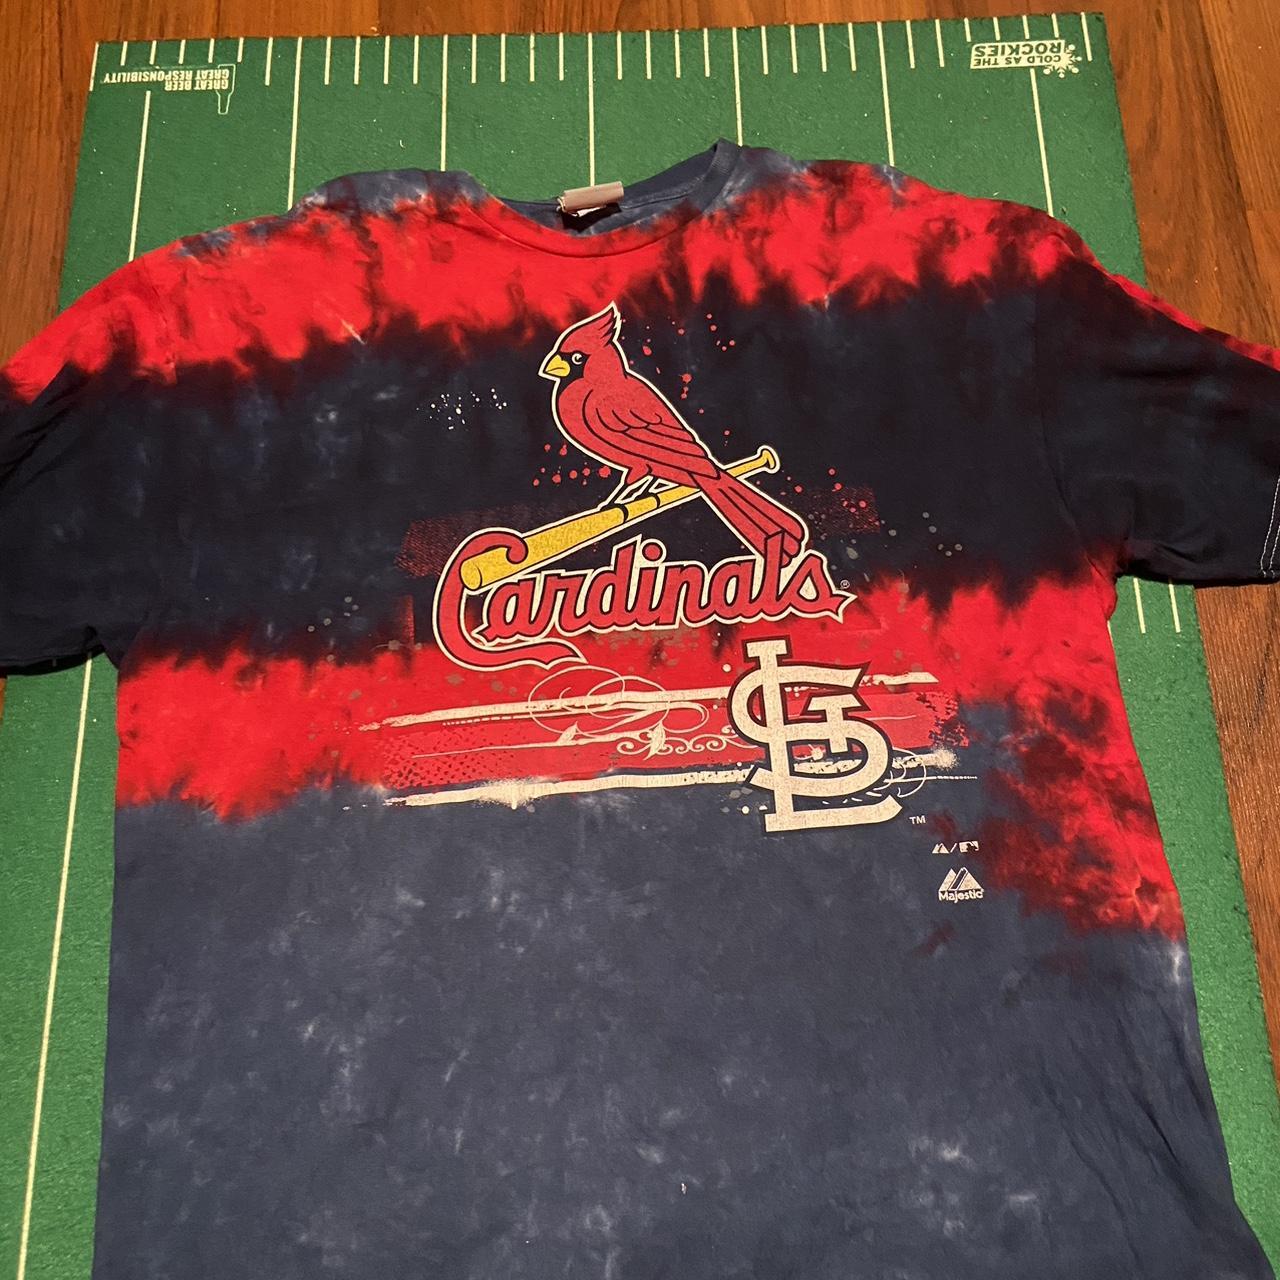 Vintage St Louis Cardinals T-Shirt